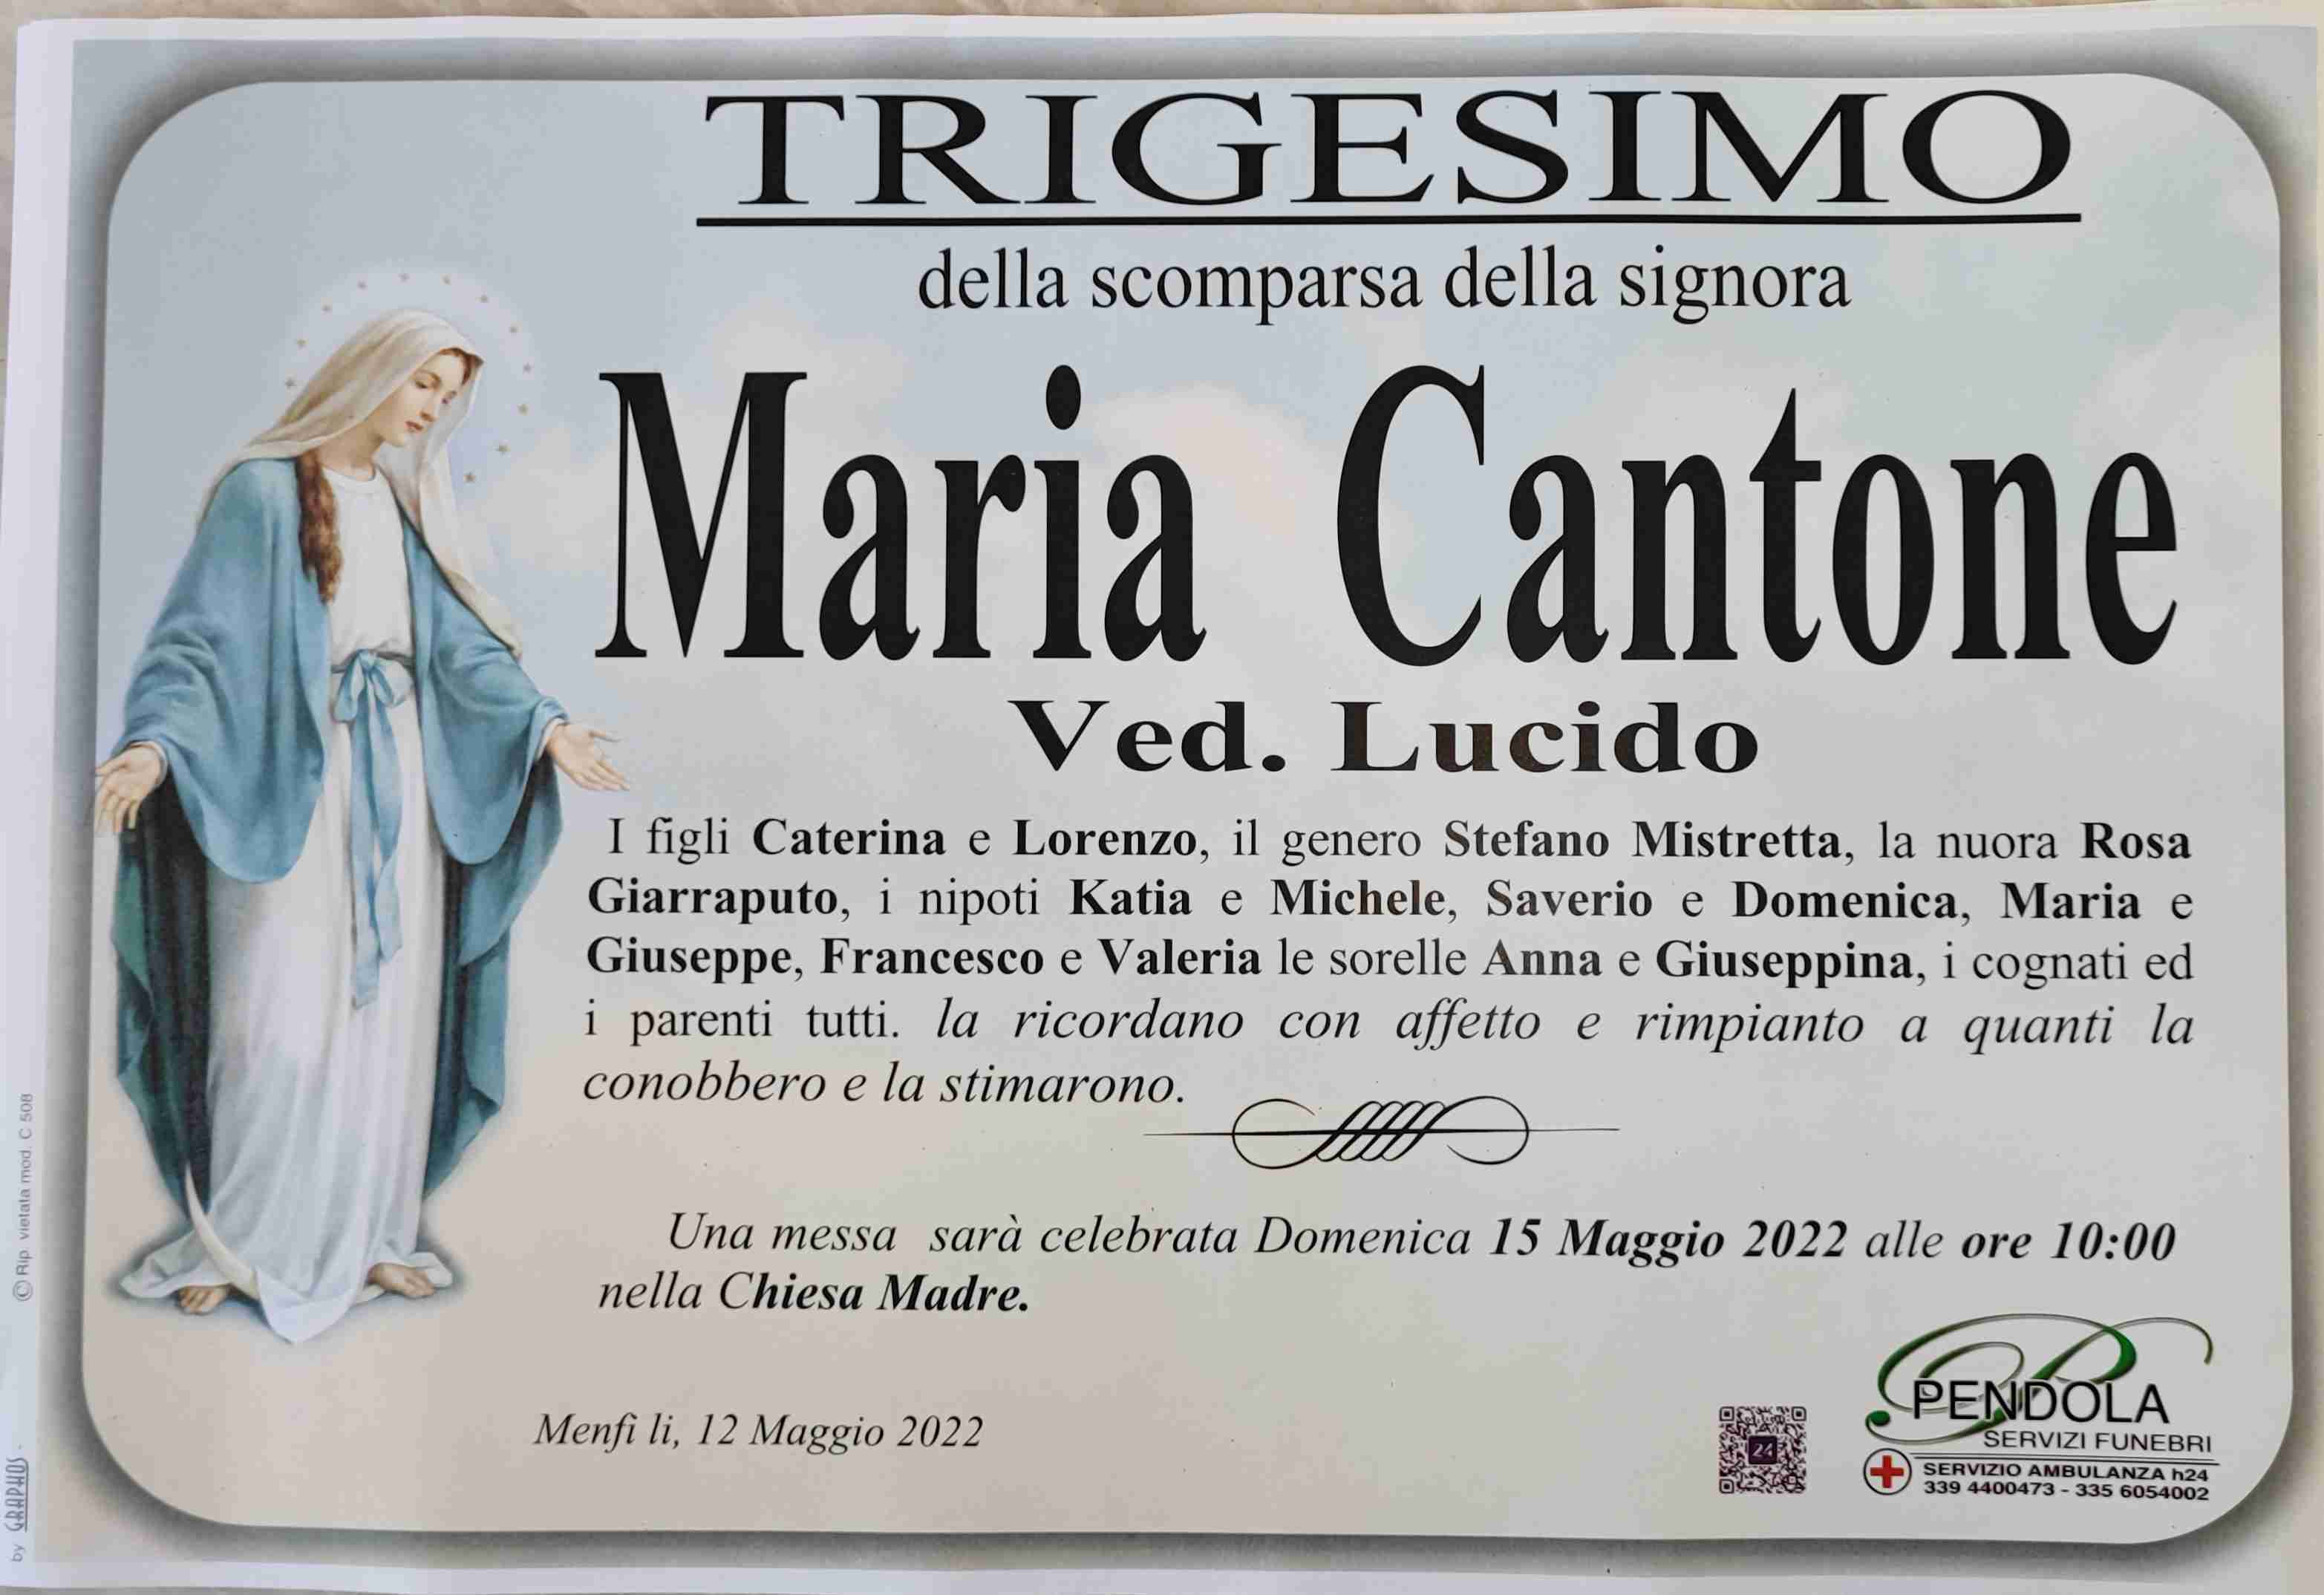 Maria Cantone